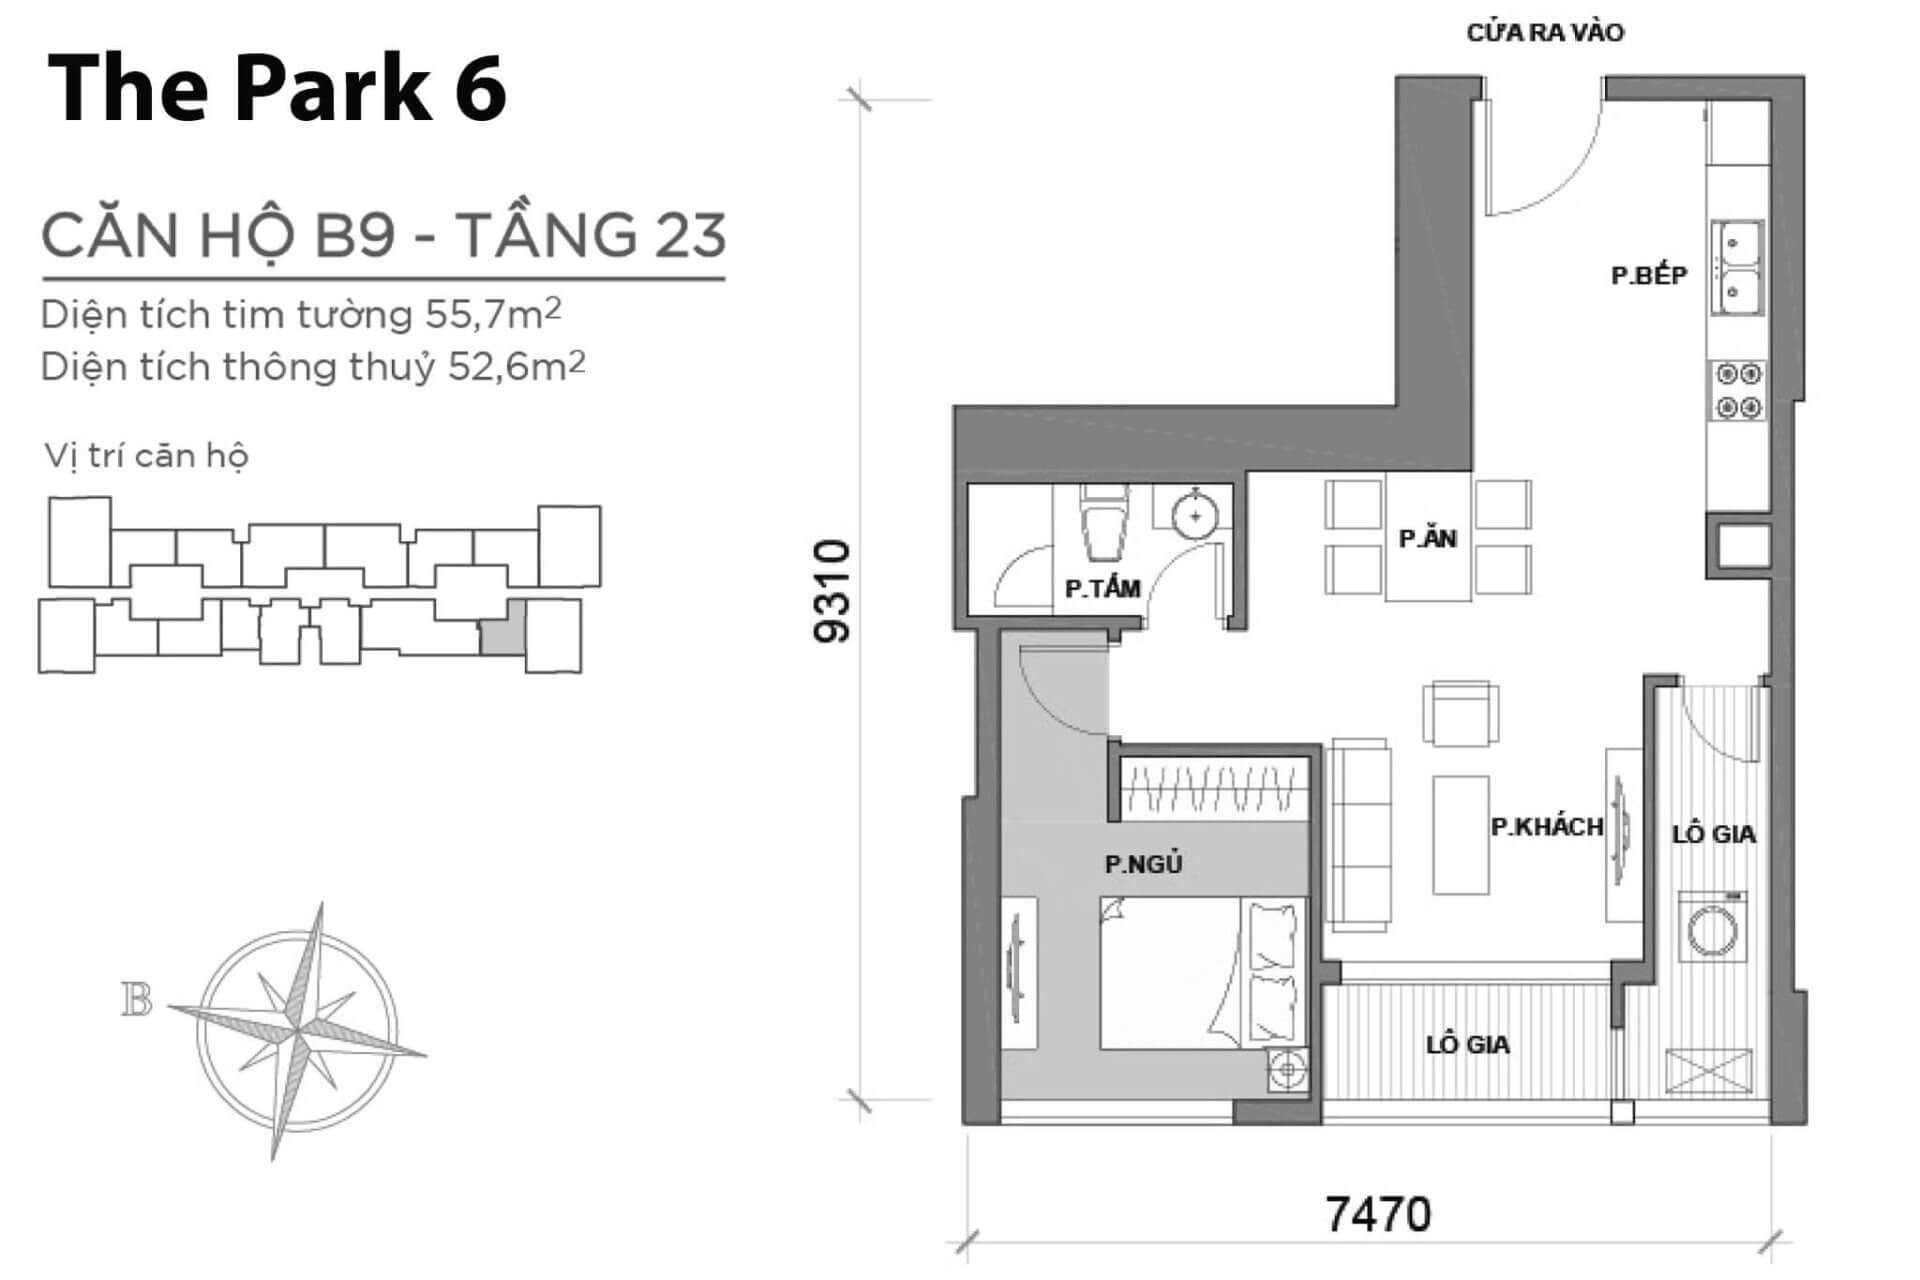 mặt bằng layout Park 6 căn hộ B9 P6B-09 tầng 23